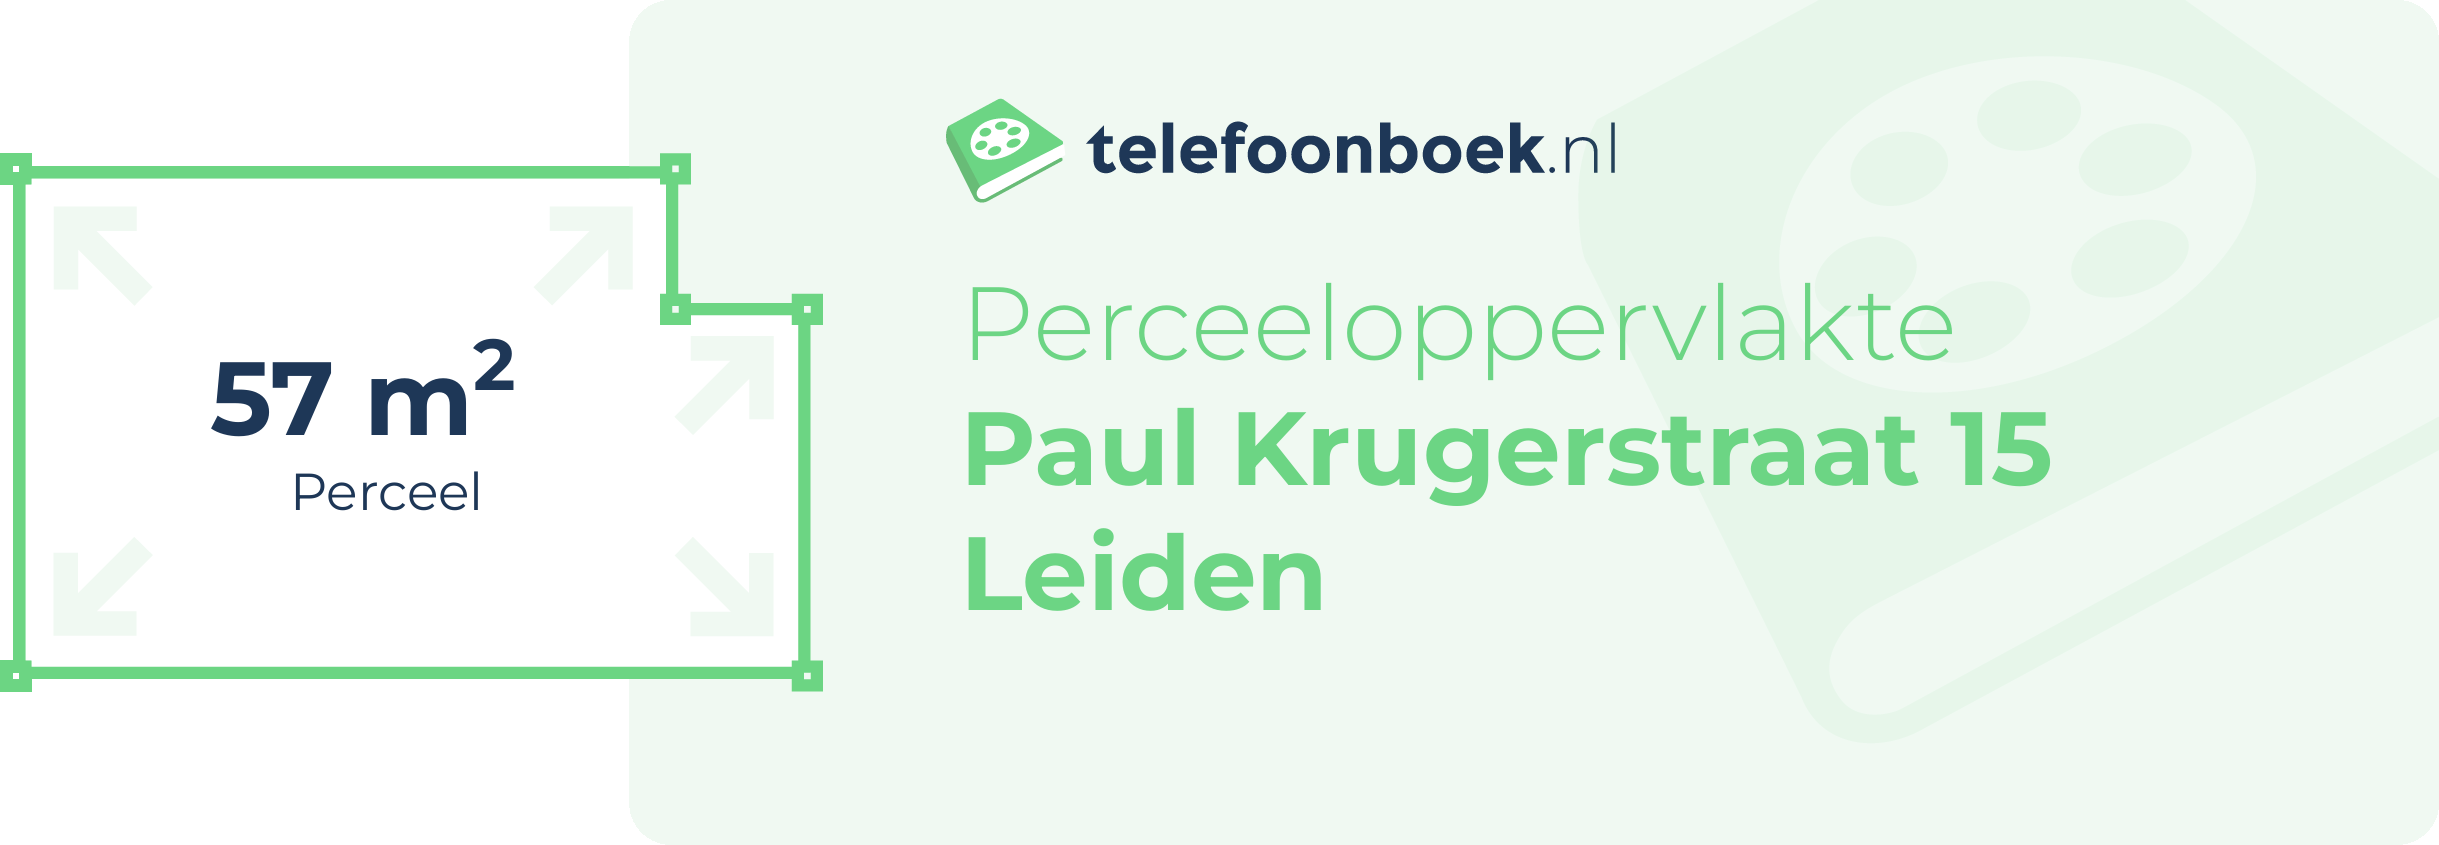 Perceeloppervlakte Paul Krugerstraat 15 Leiden